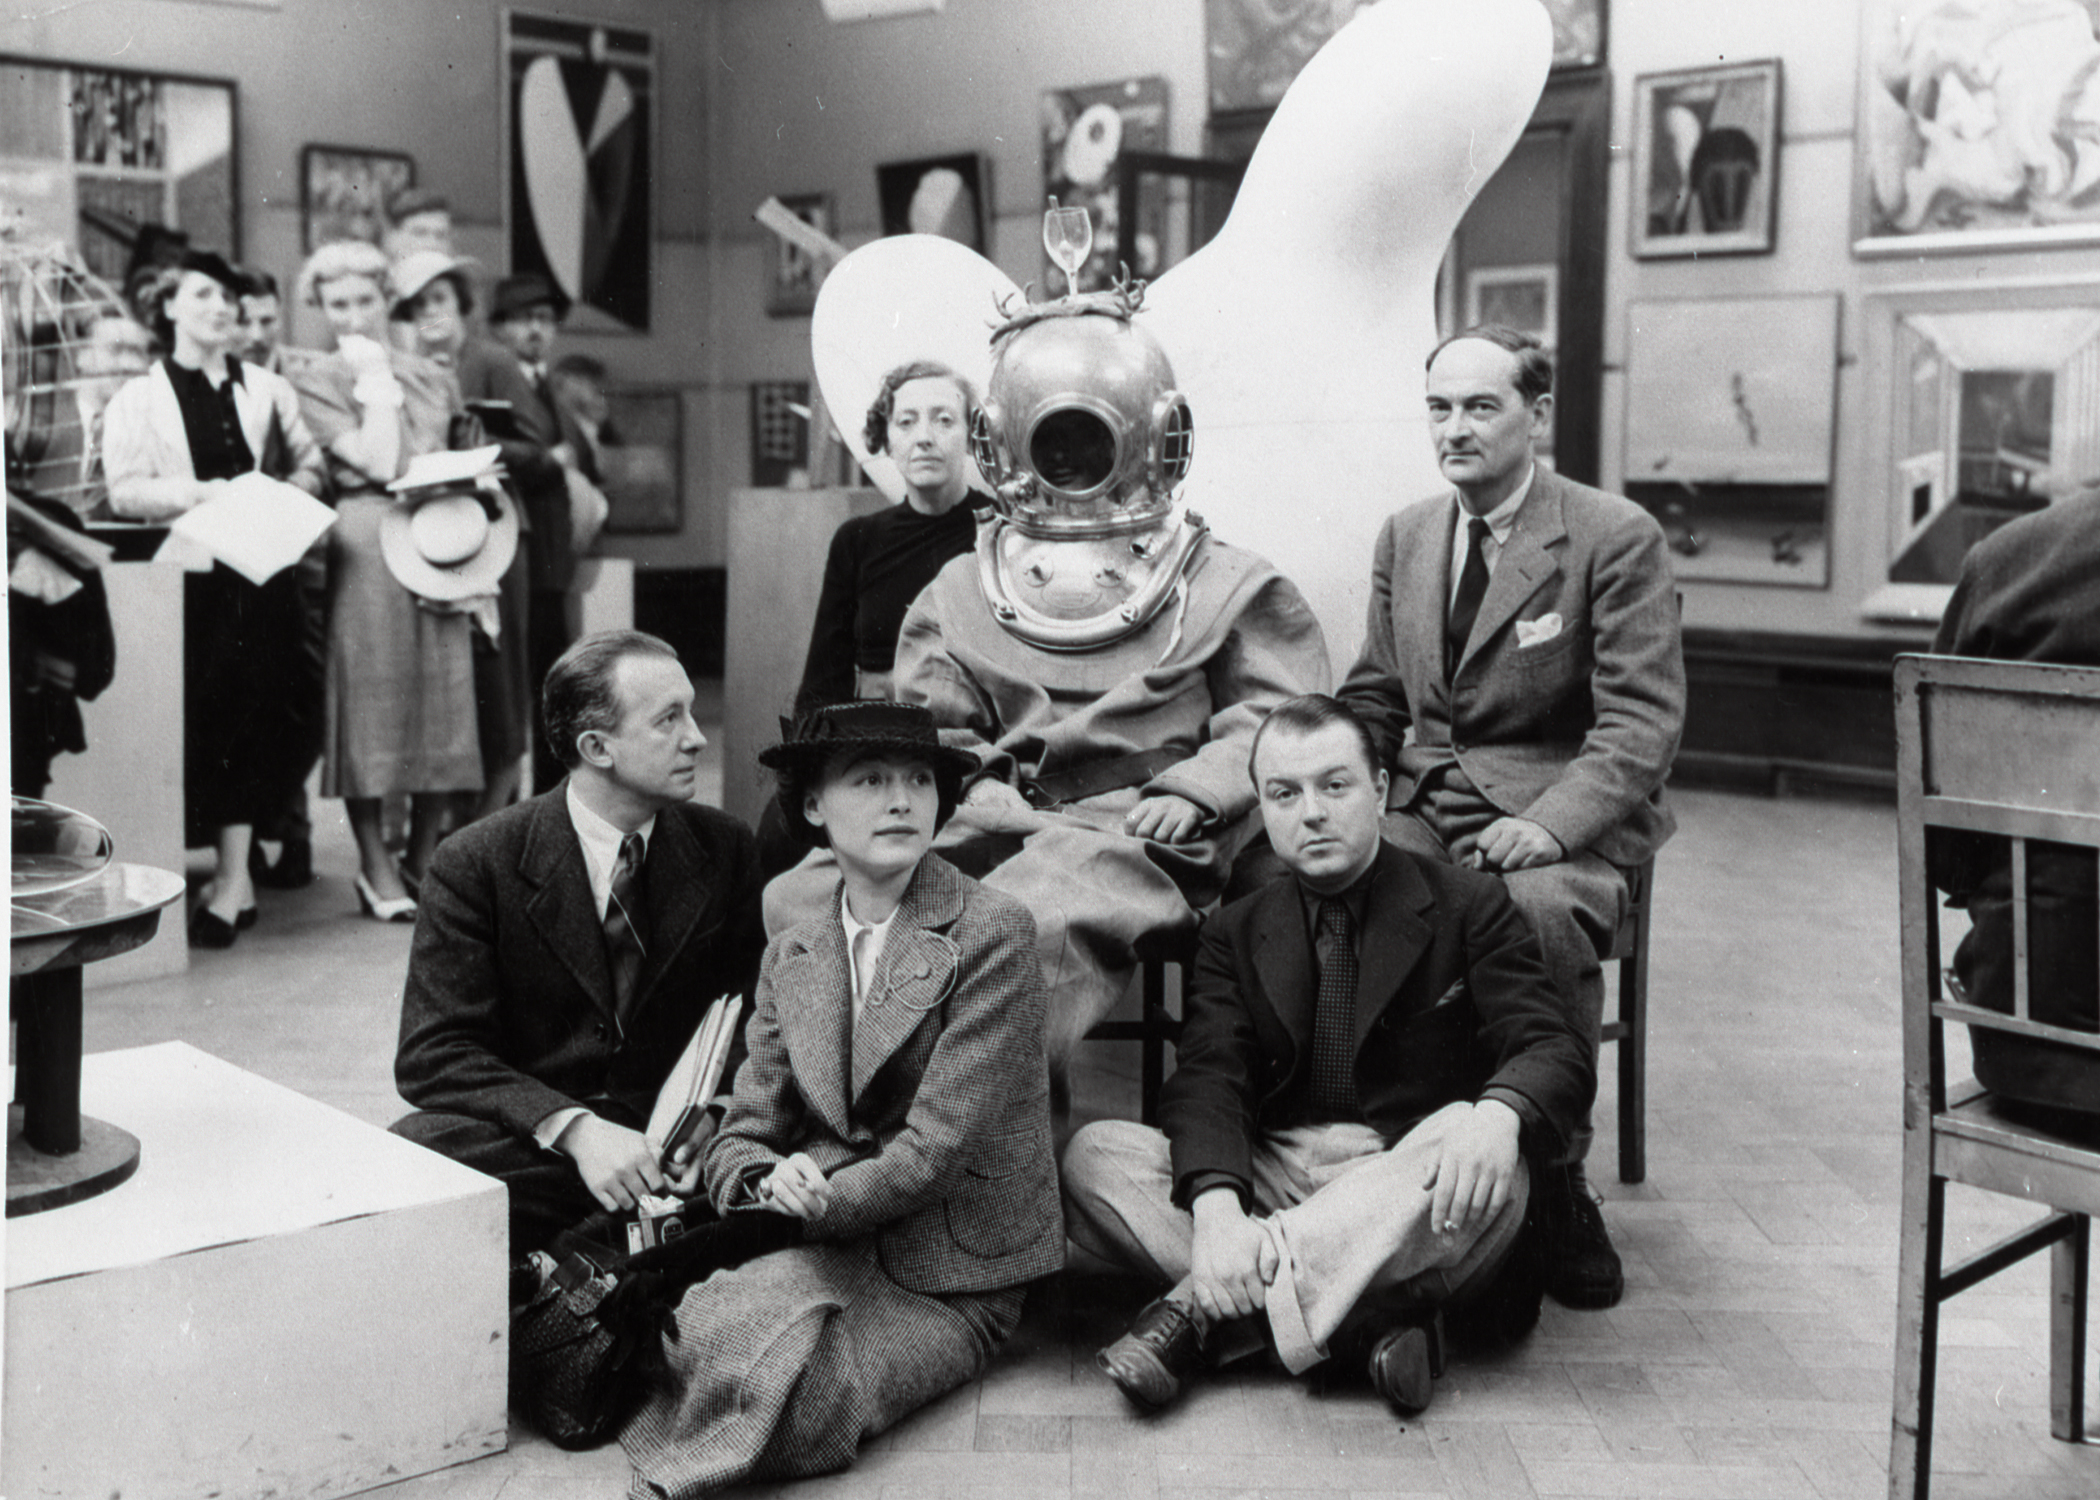 Chancery, Exposition internationale du surréalisme à Londres (Paul Éluard, Nusch Éluard, Diana Lee, Salvador Dalí, E.L.T. Mesens et Rupert Lee), 1936, Musée d’art et d’histoire, Saint-Denis.